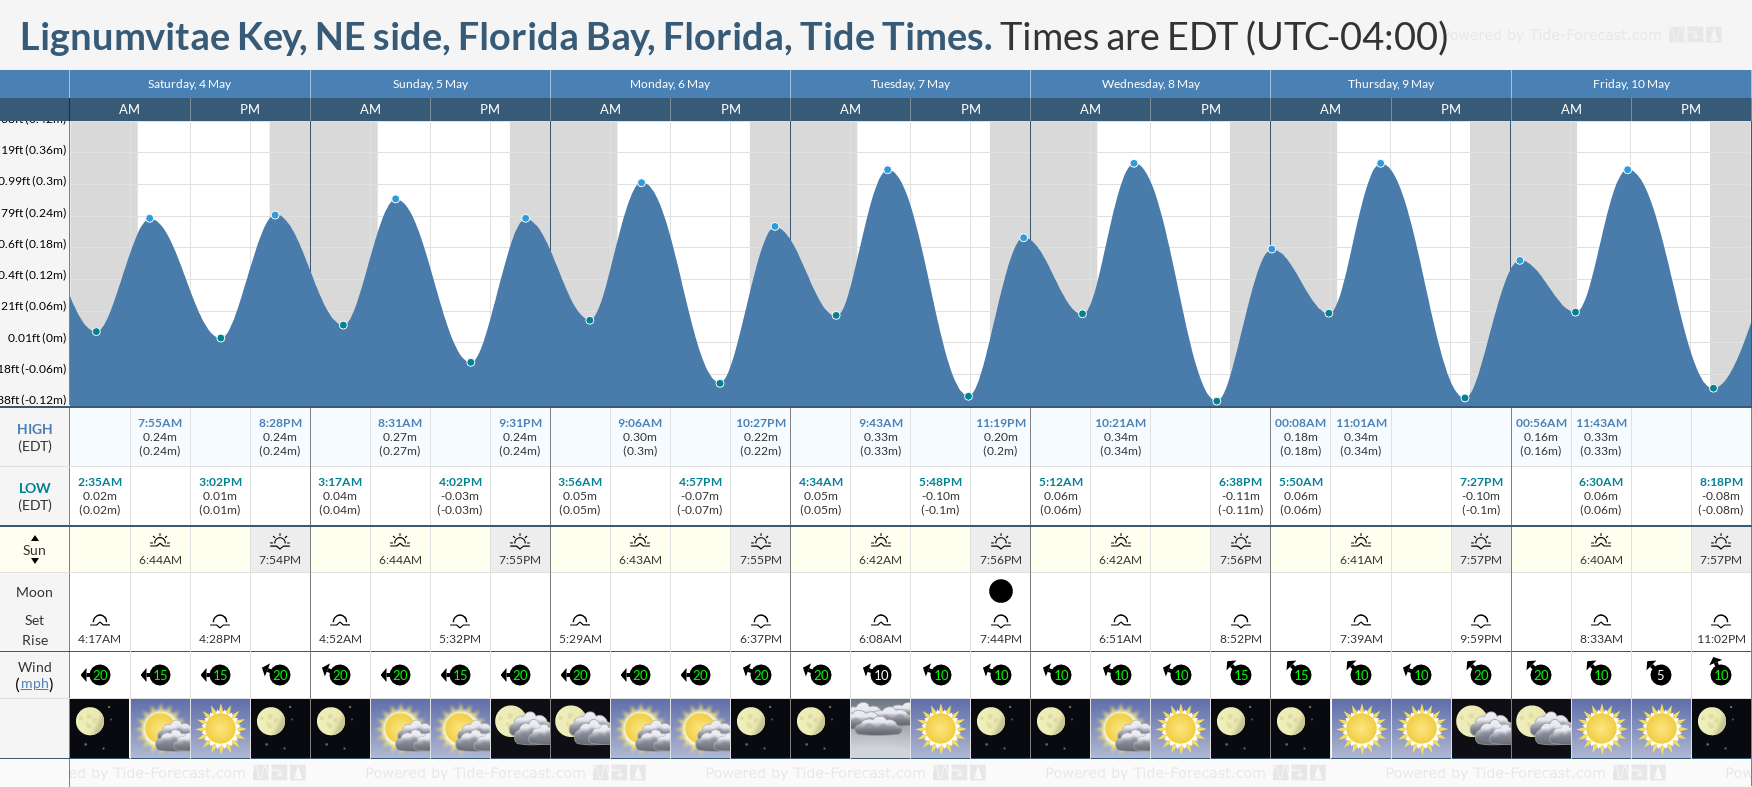 Lignumvitae Key, NE side, Florida Bay, Florida Tide Chart including high and low tide tide times for the next 7 days